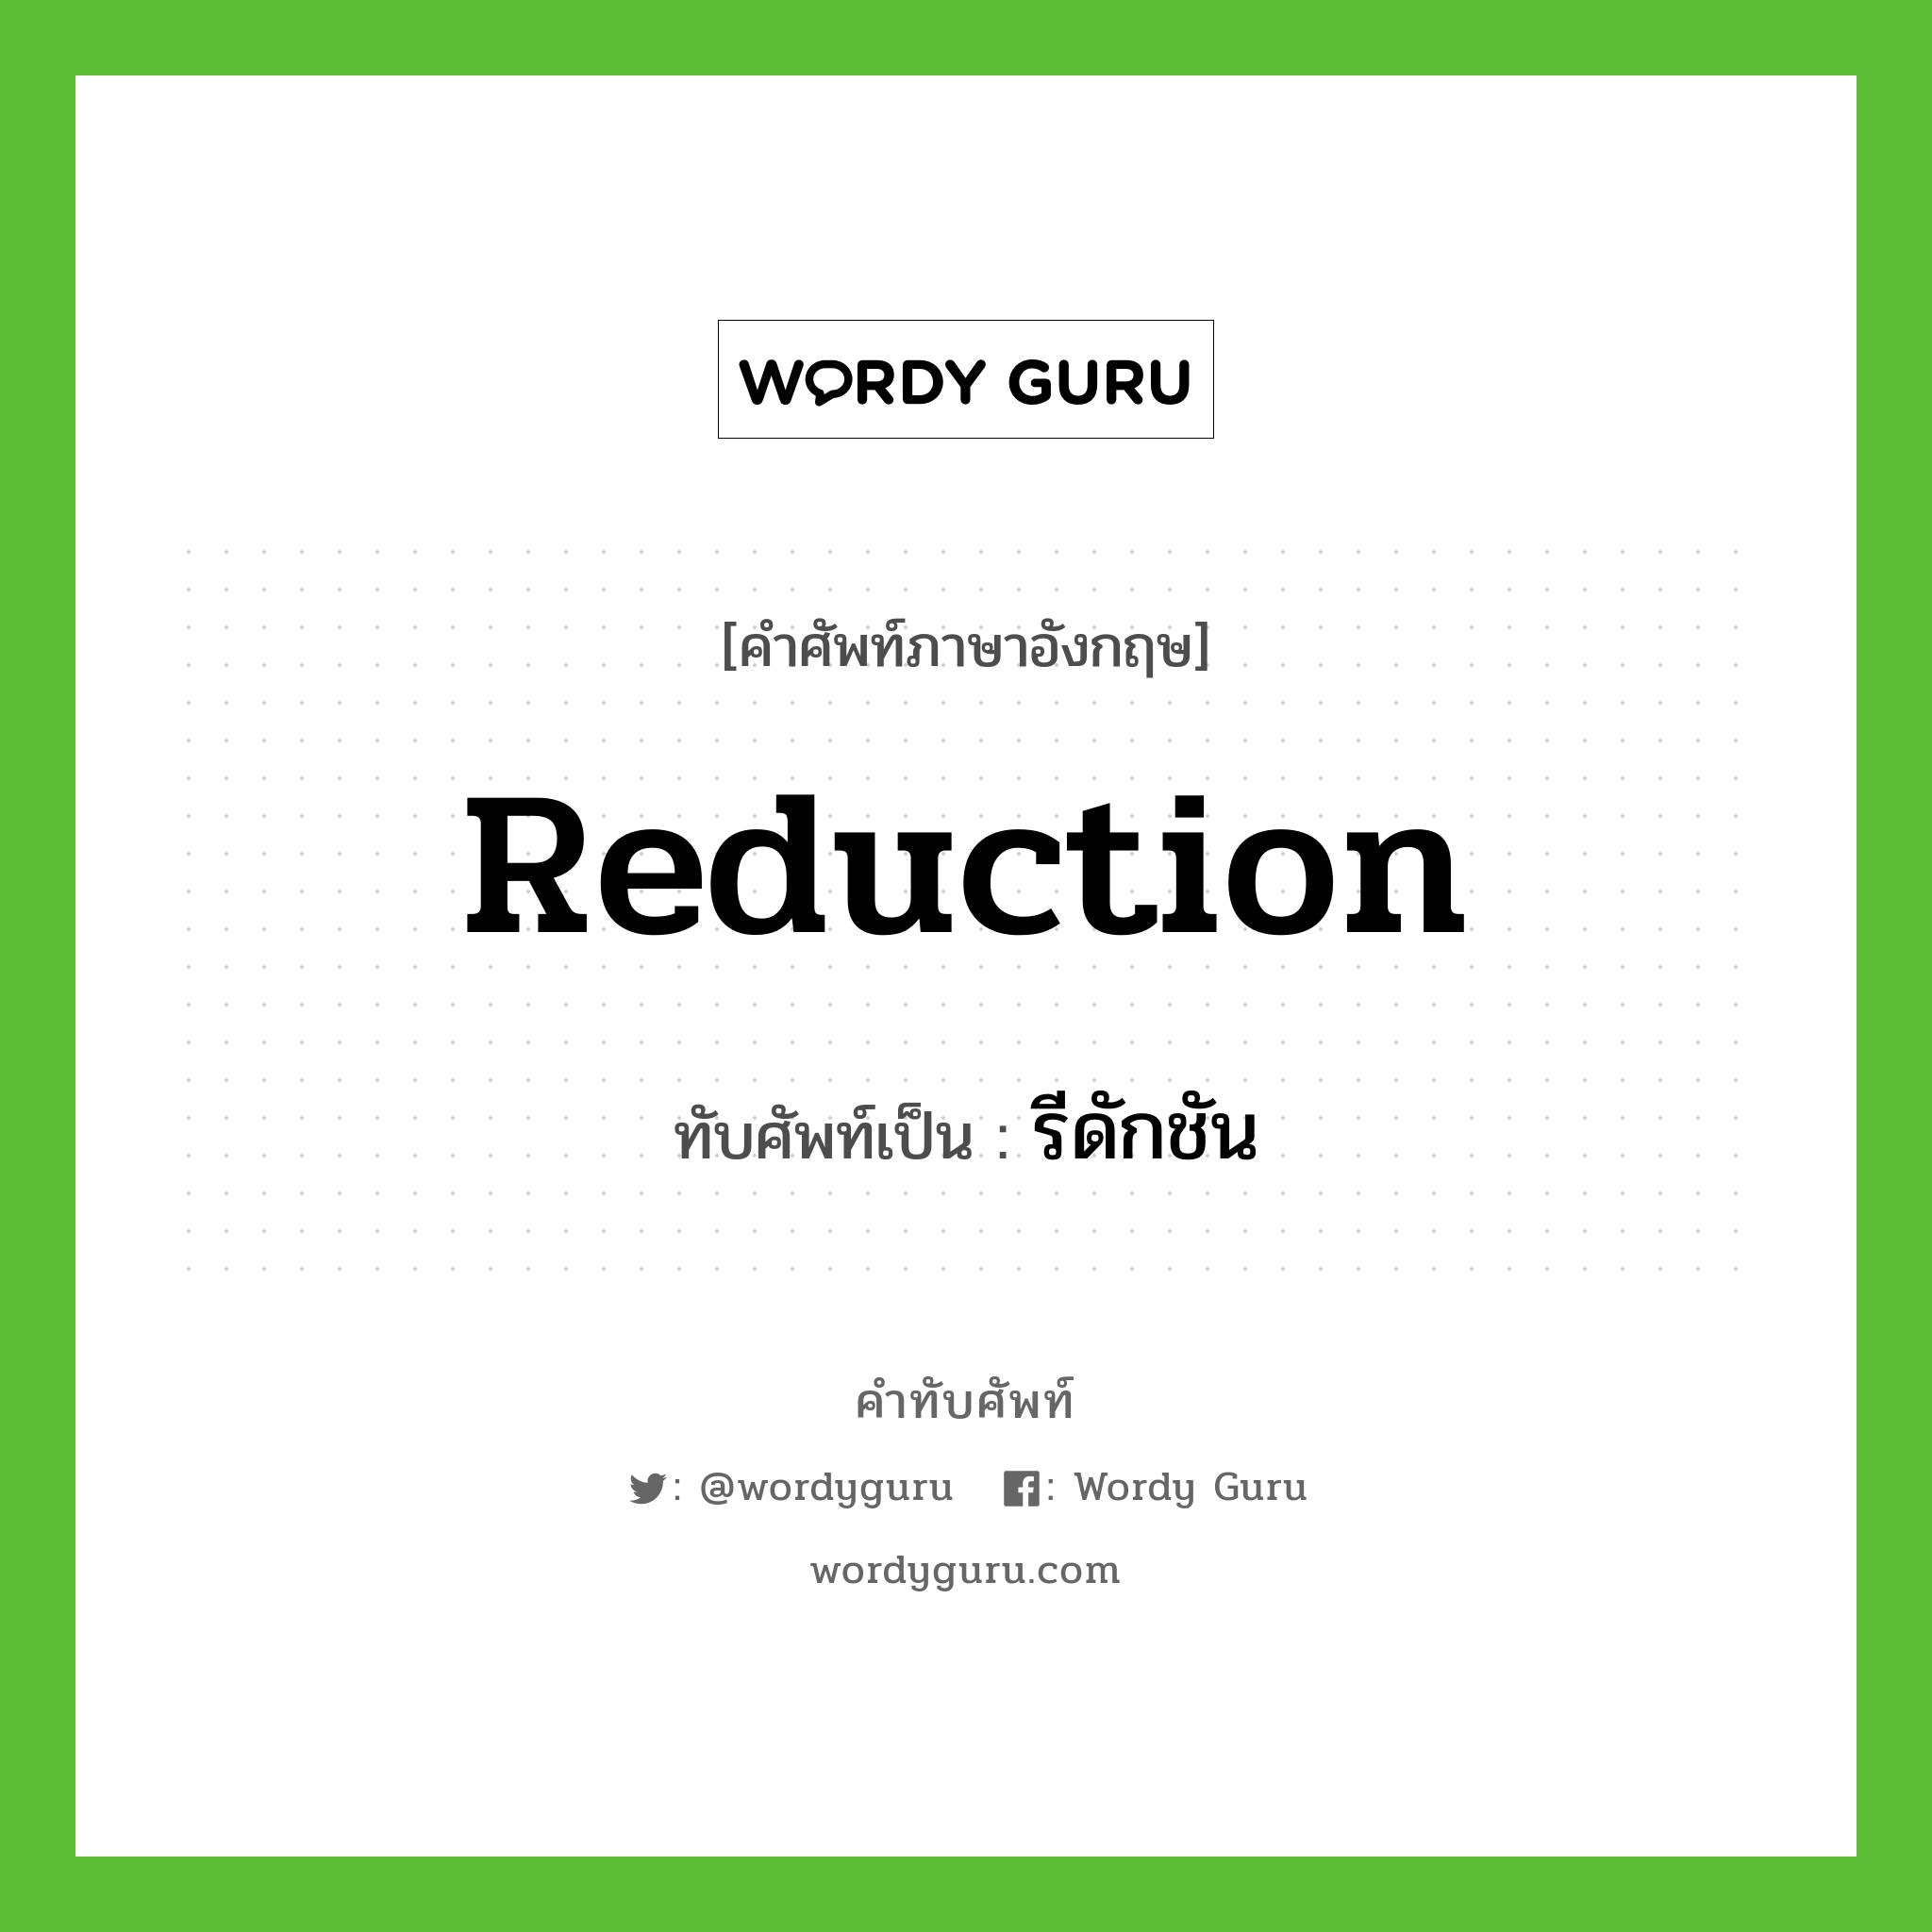 reduction เขียนเป็นคำไทยว่าอะไร?, คำศัพท์ภาษาอังกฤษ reduction ทับศัพท์เป็น รีดักชัน